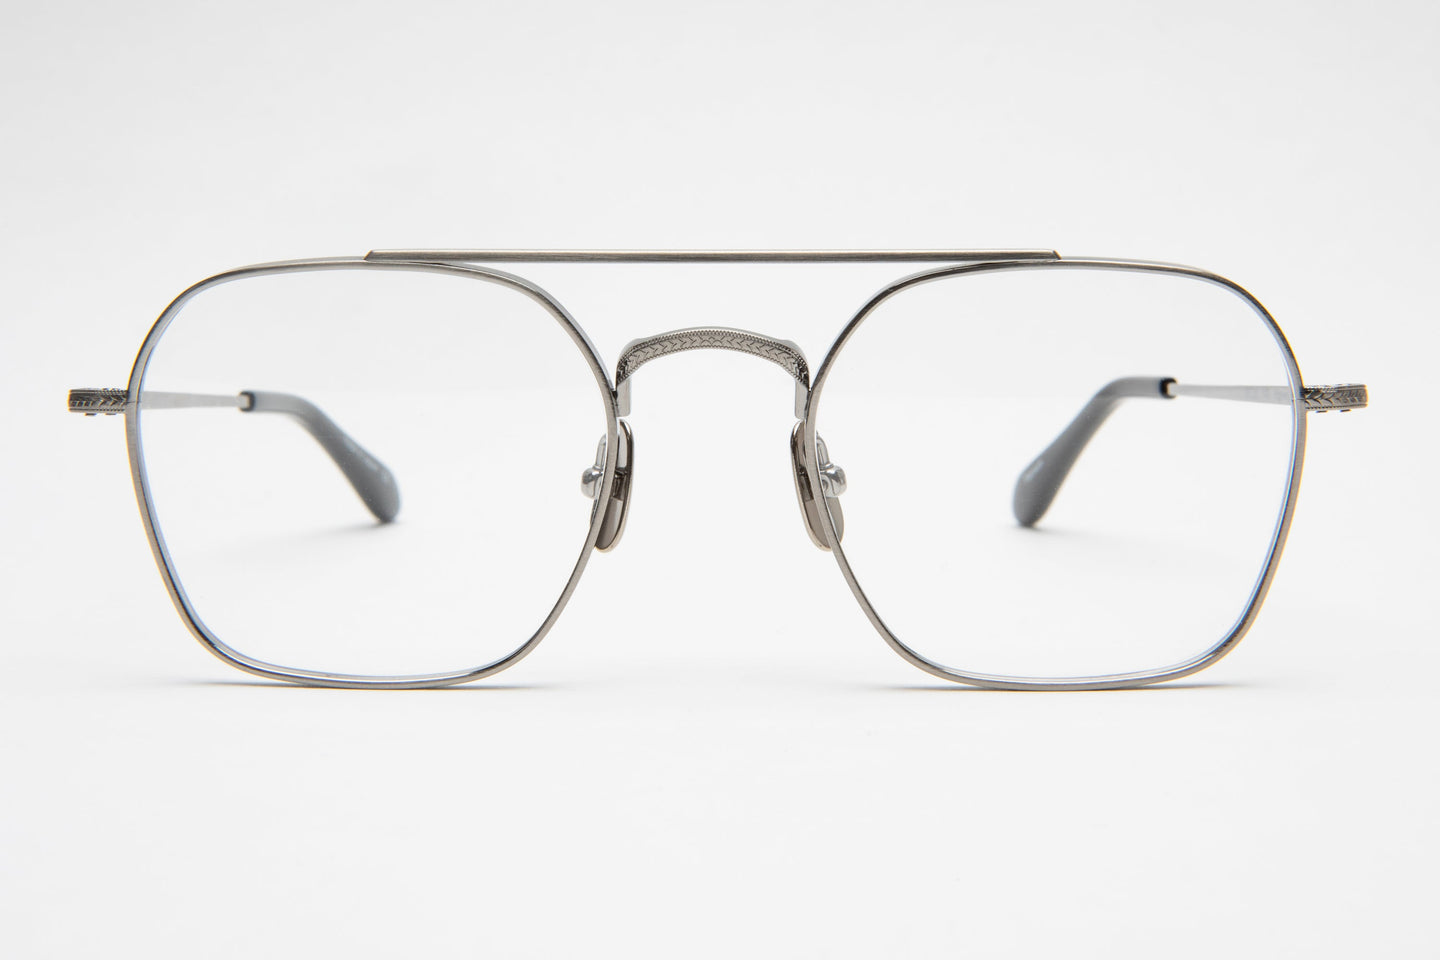 Highway Retro Dutil Eyewear eyeglasses Japan